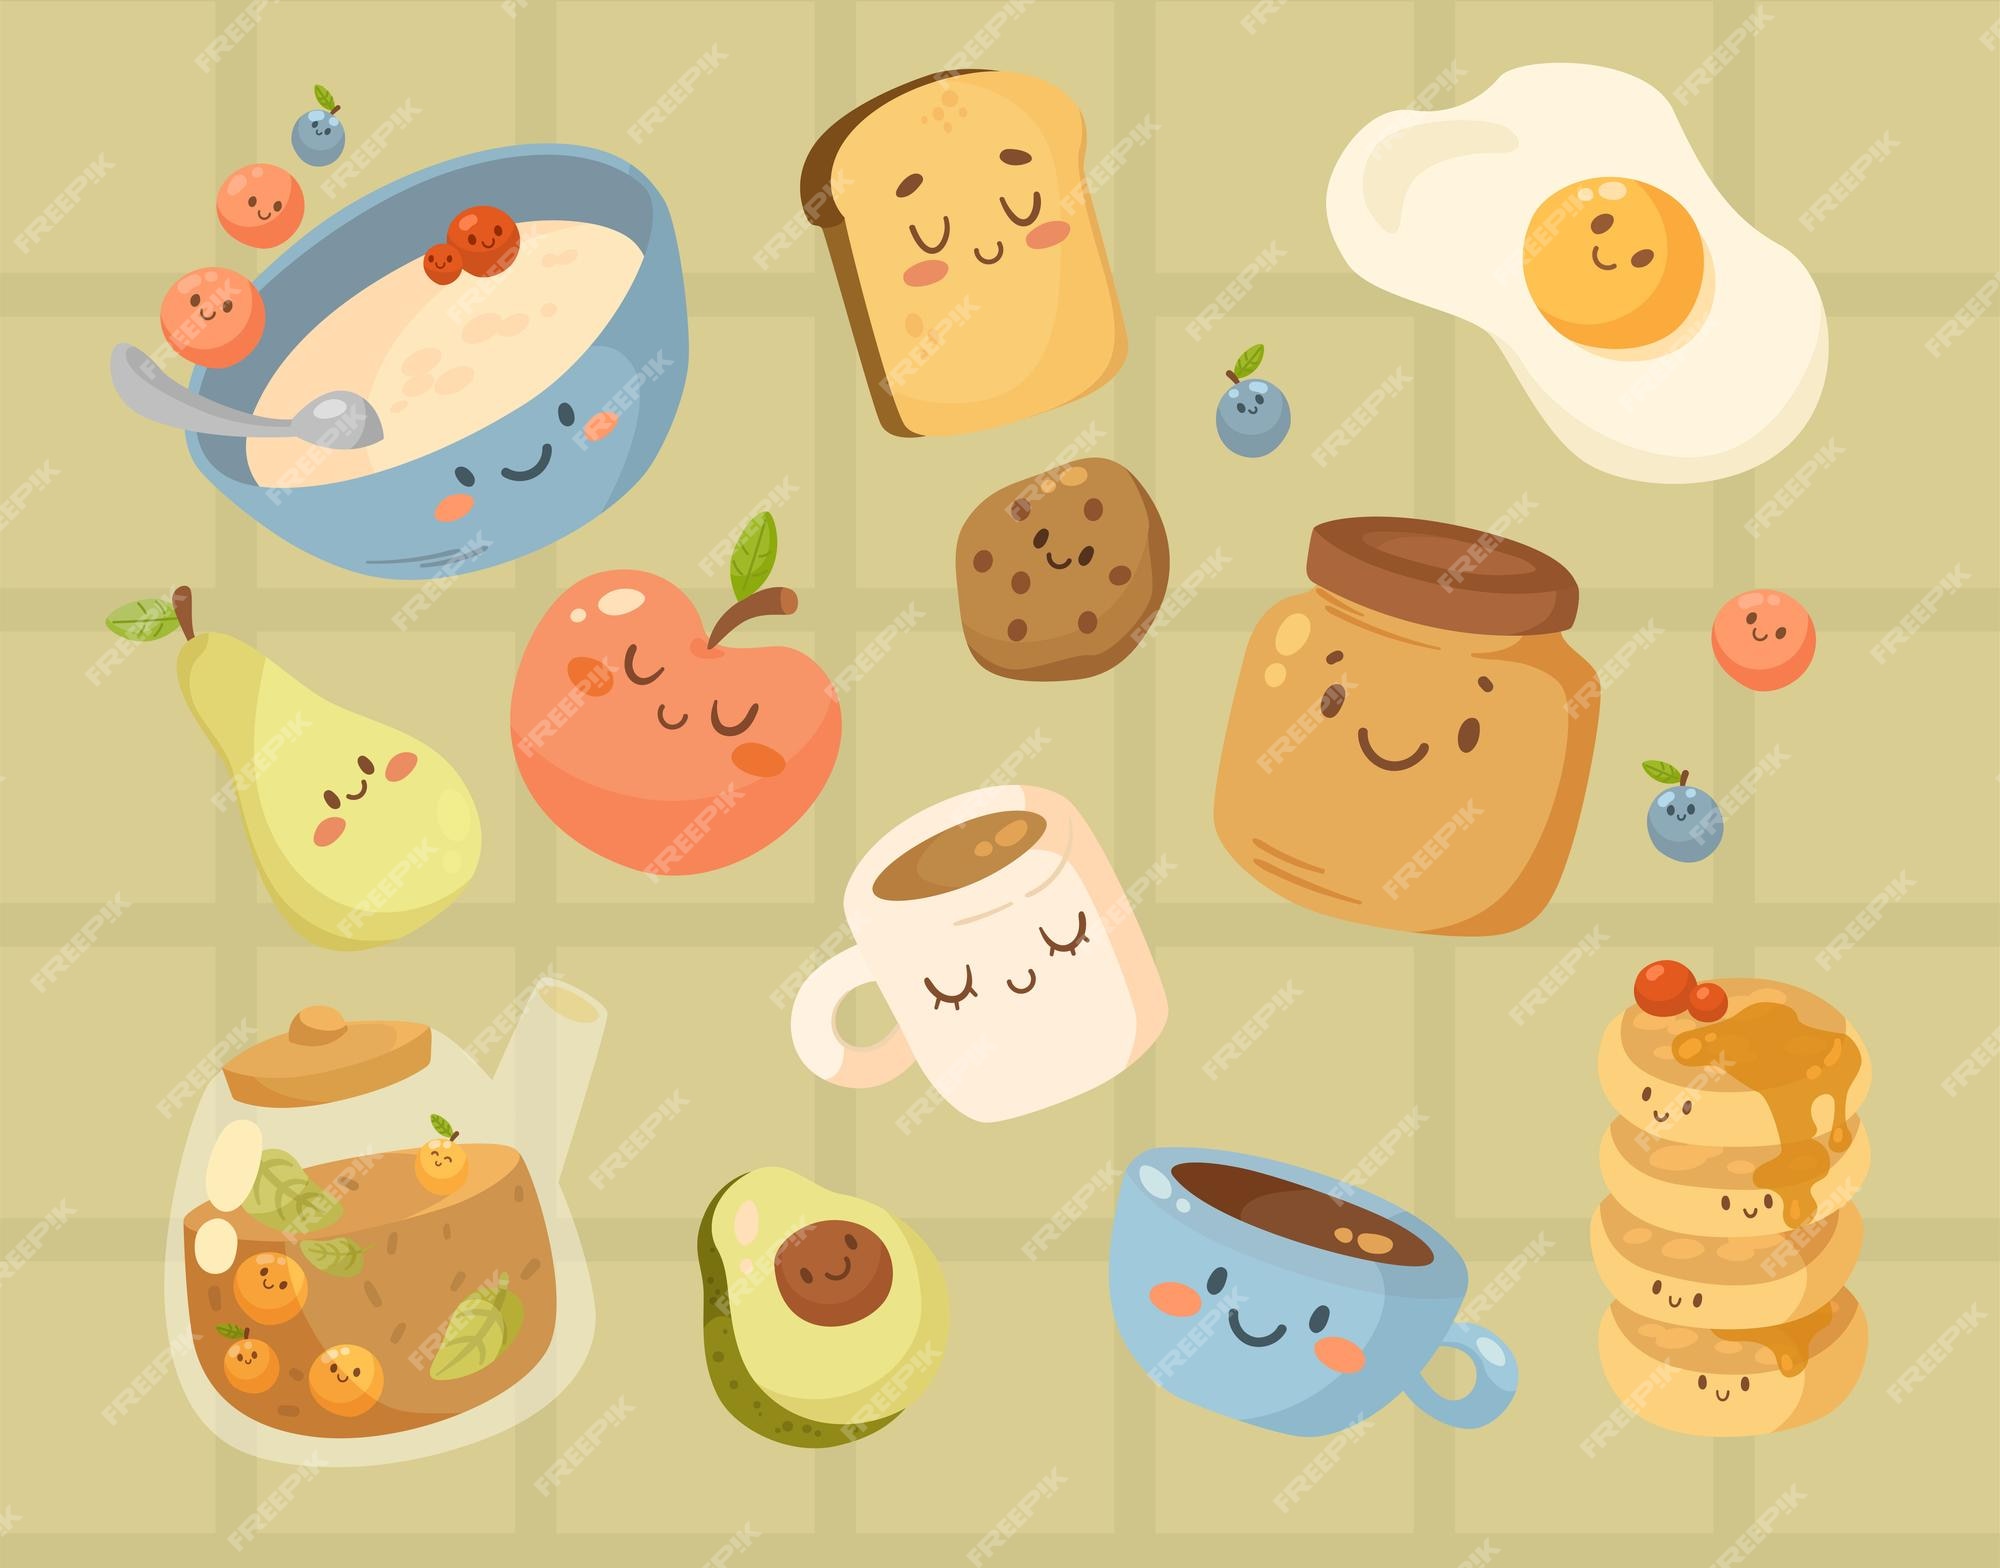 顔漫画イラストセットで面白い朝食の食べ物。かわいいお粥、果物、ベリー、ゆで卵、ビスケットのキャラクター。コーヒー、紅茶、ティーポット。食事、朝のルーチンの概念  無料のベクター